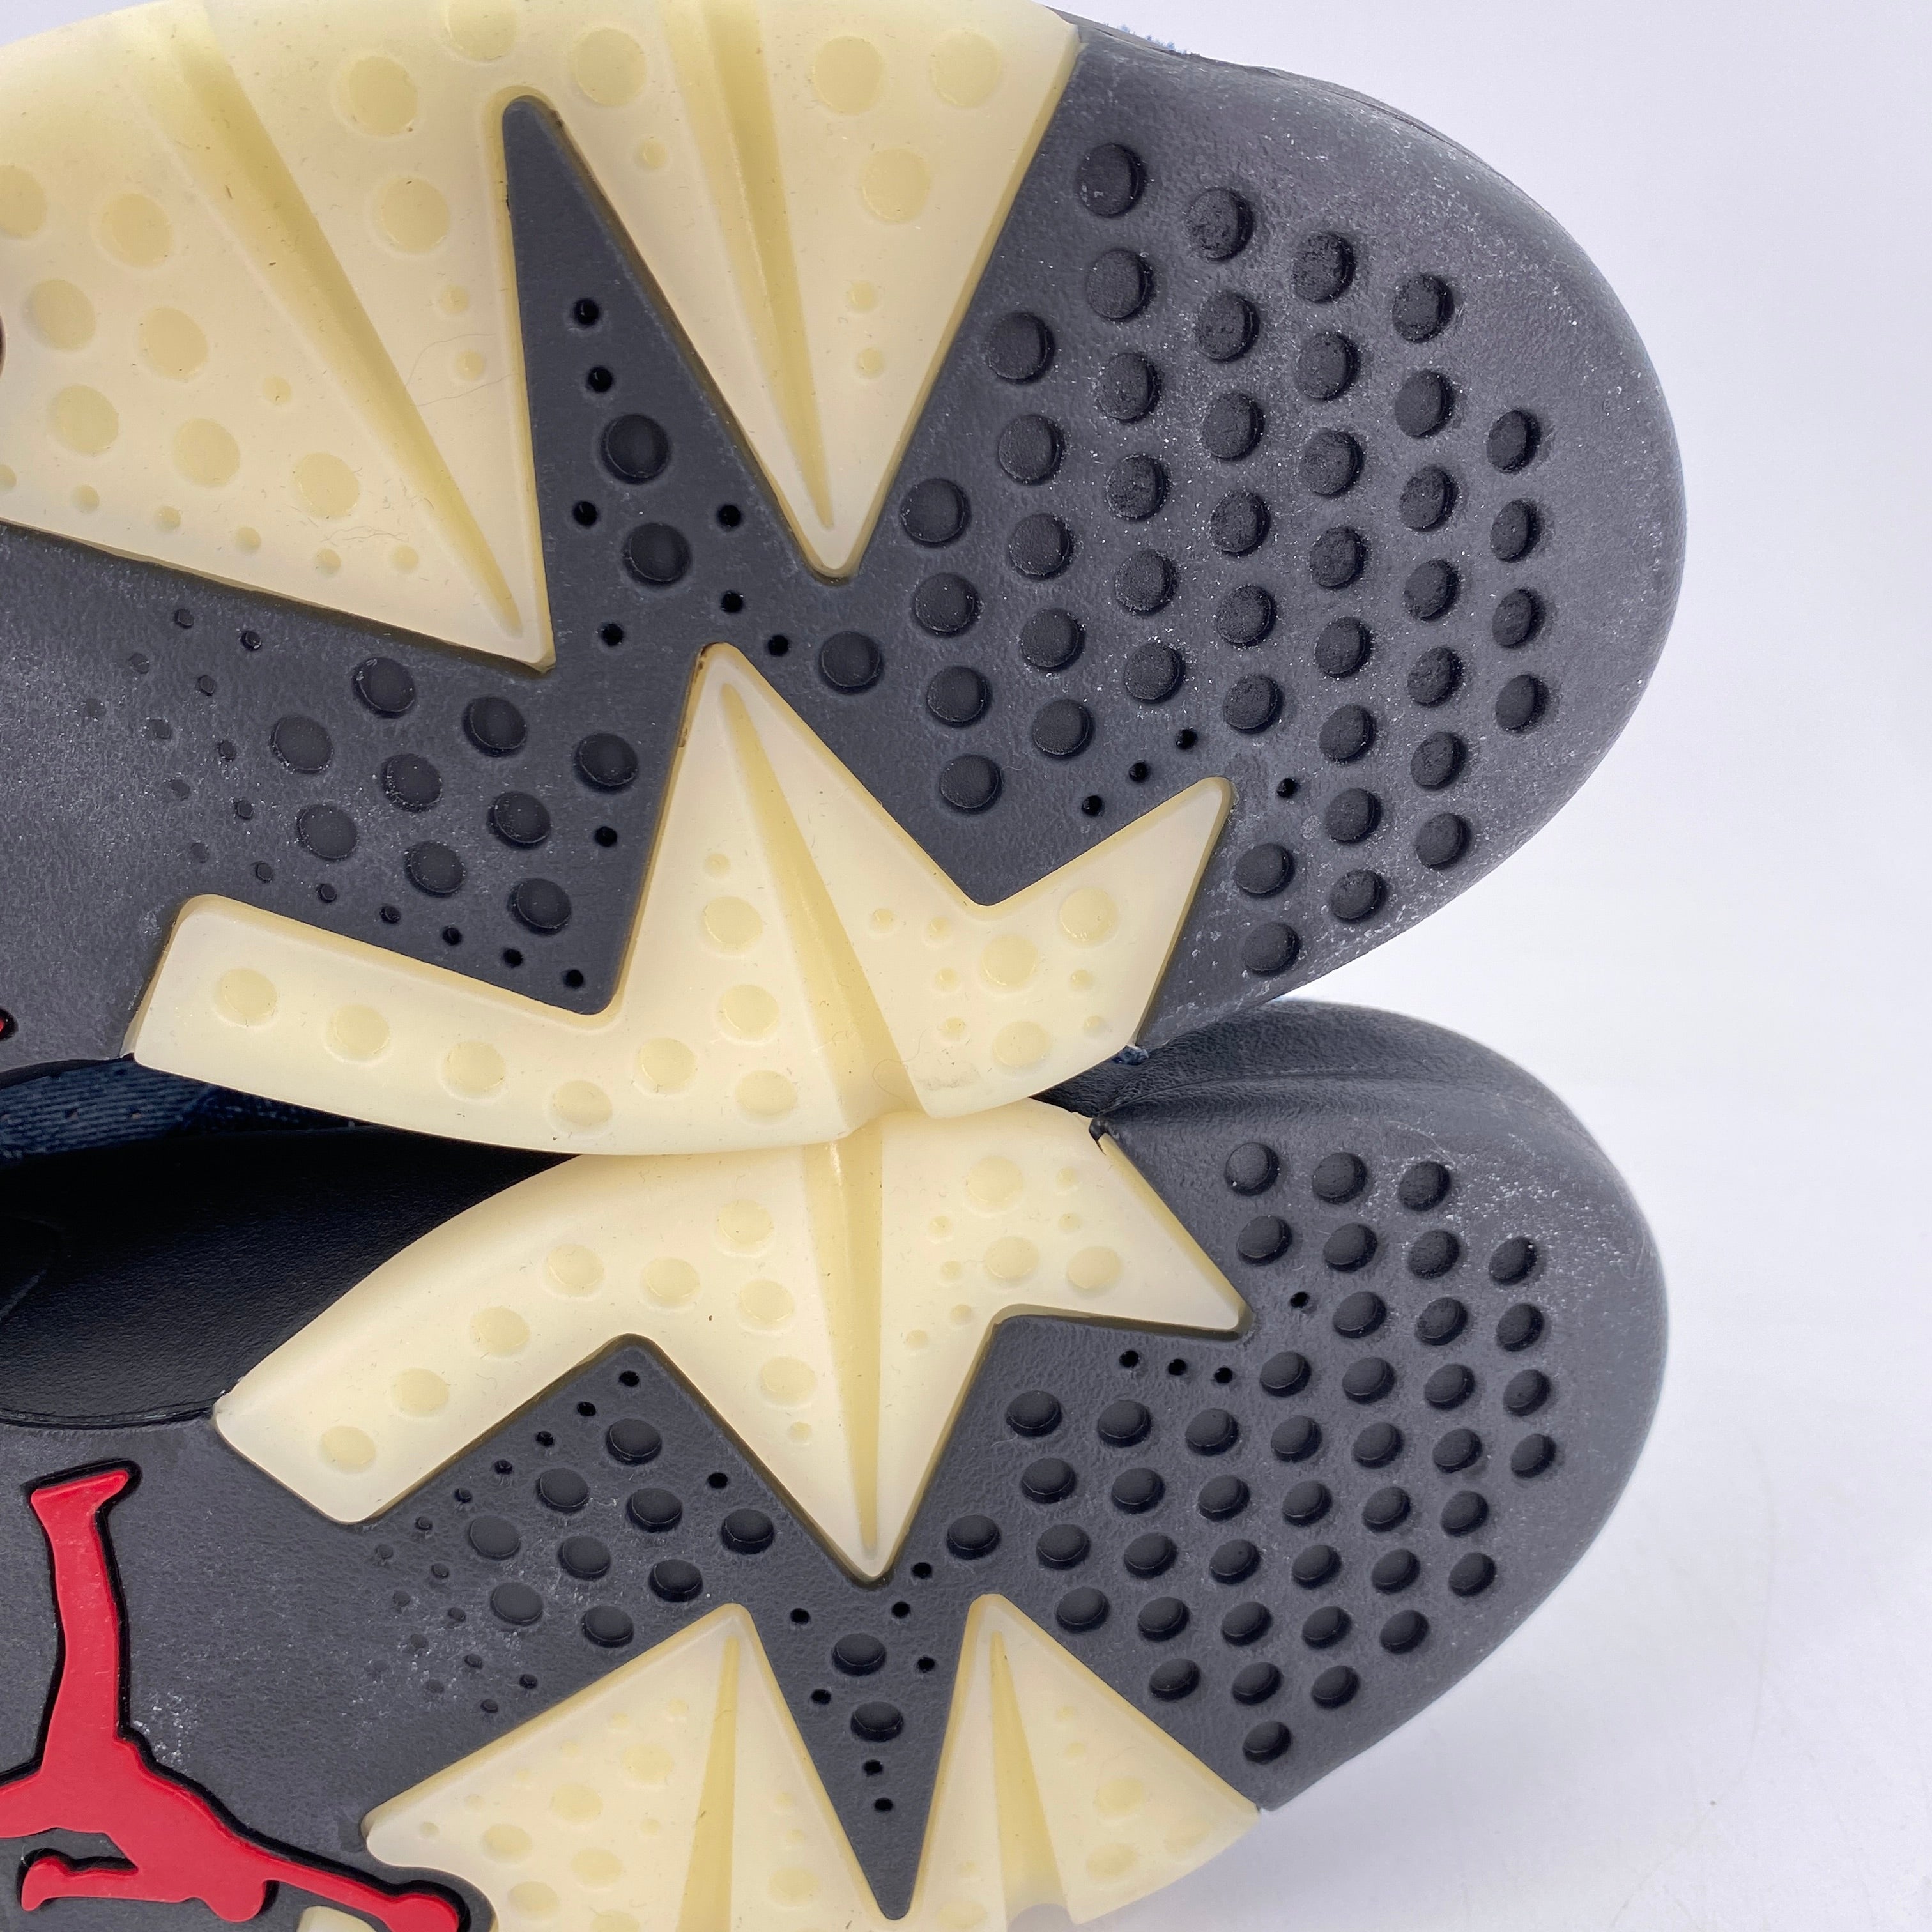 Air Jordan 6 Retro &quot;Washed Denim&quot; 2019 New Size 10.5